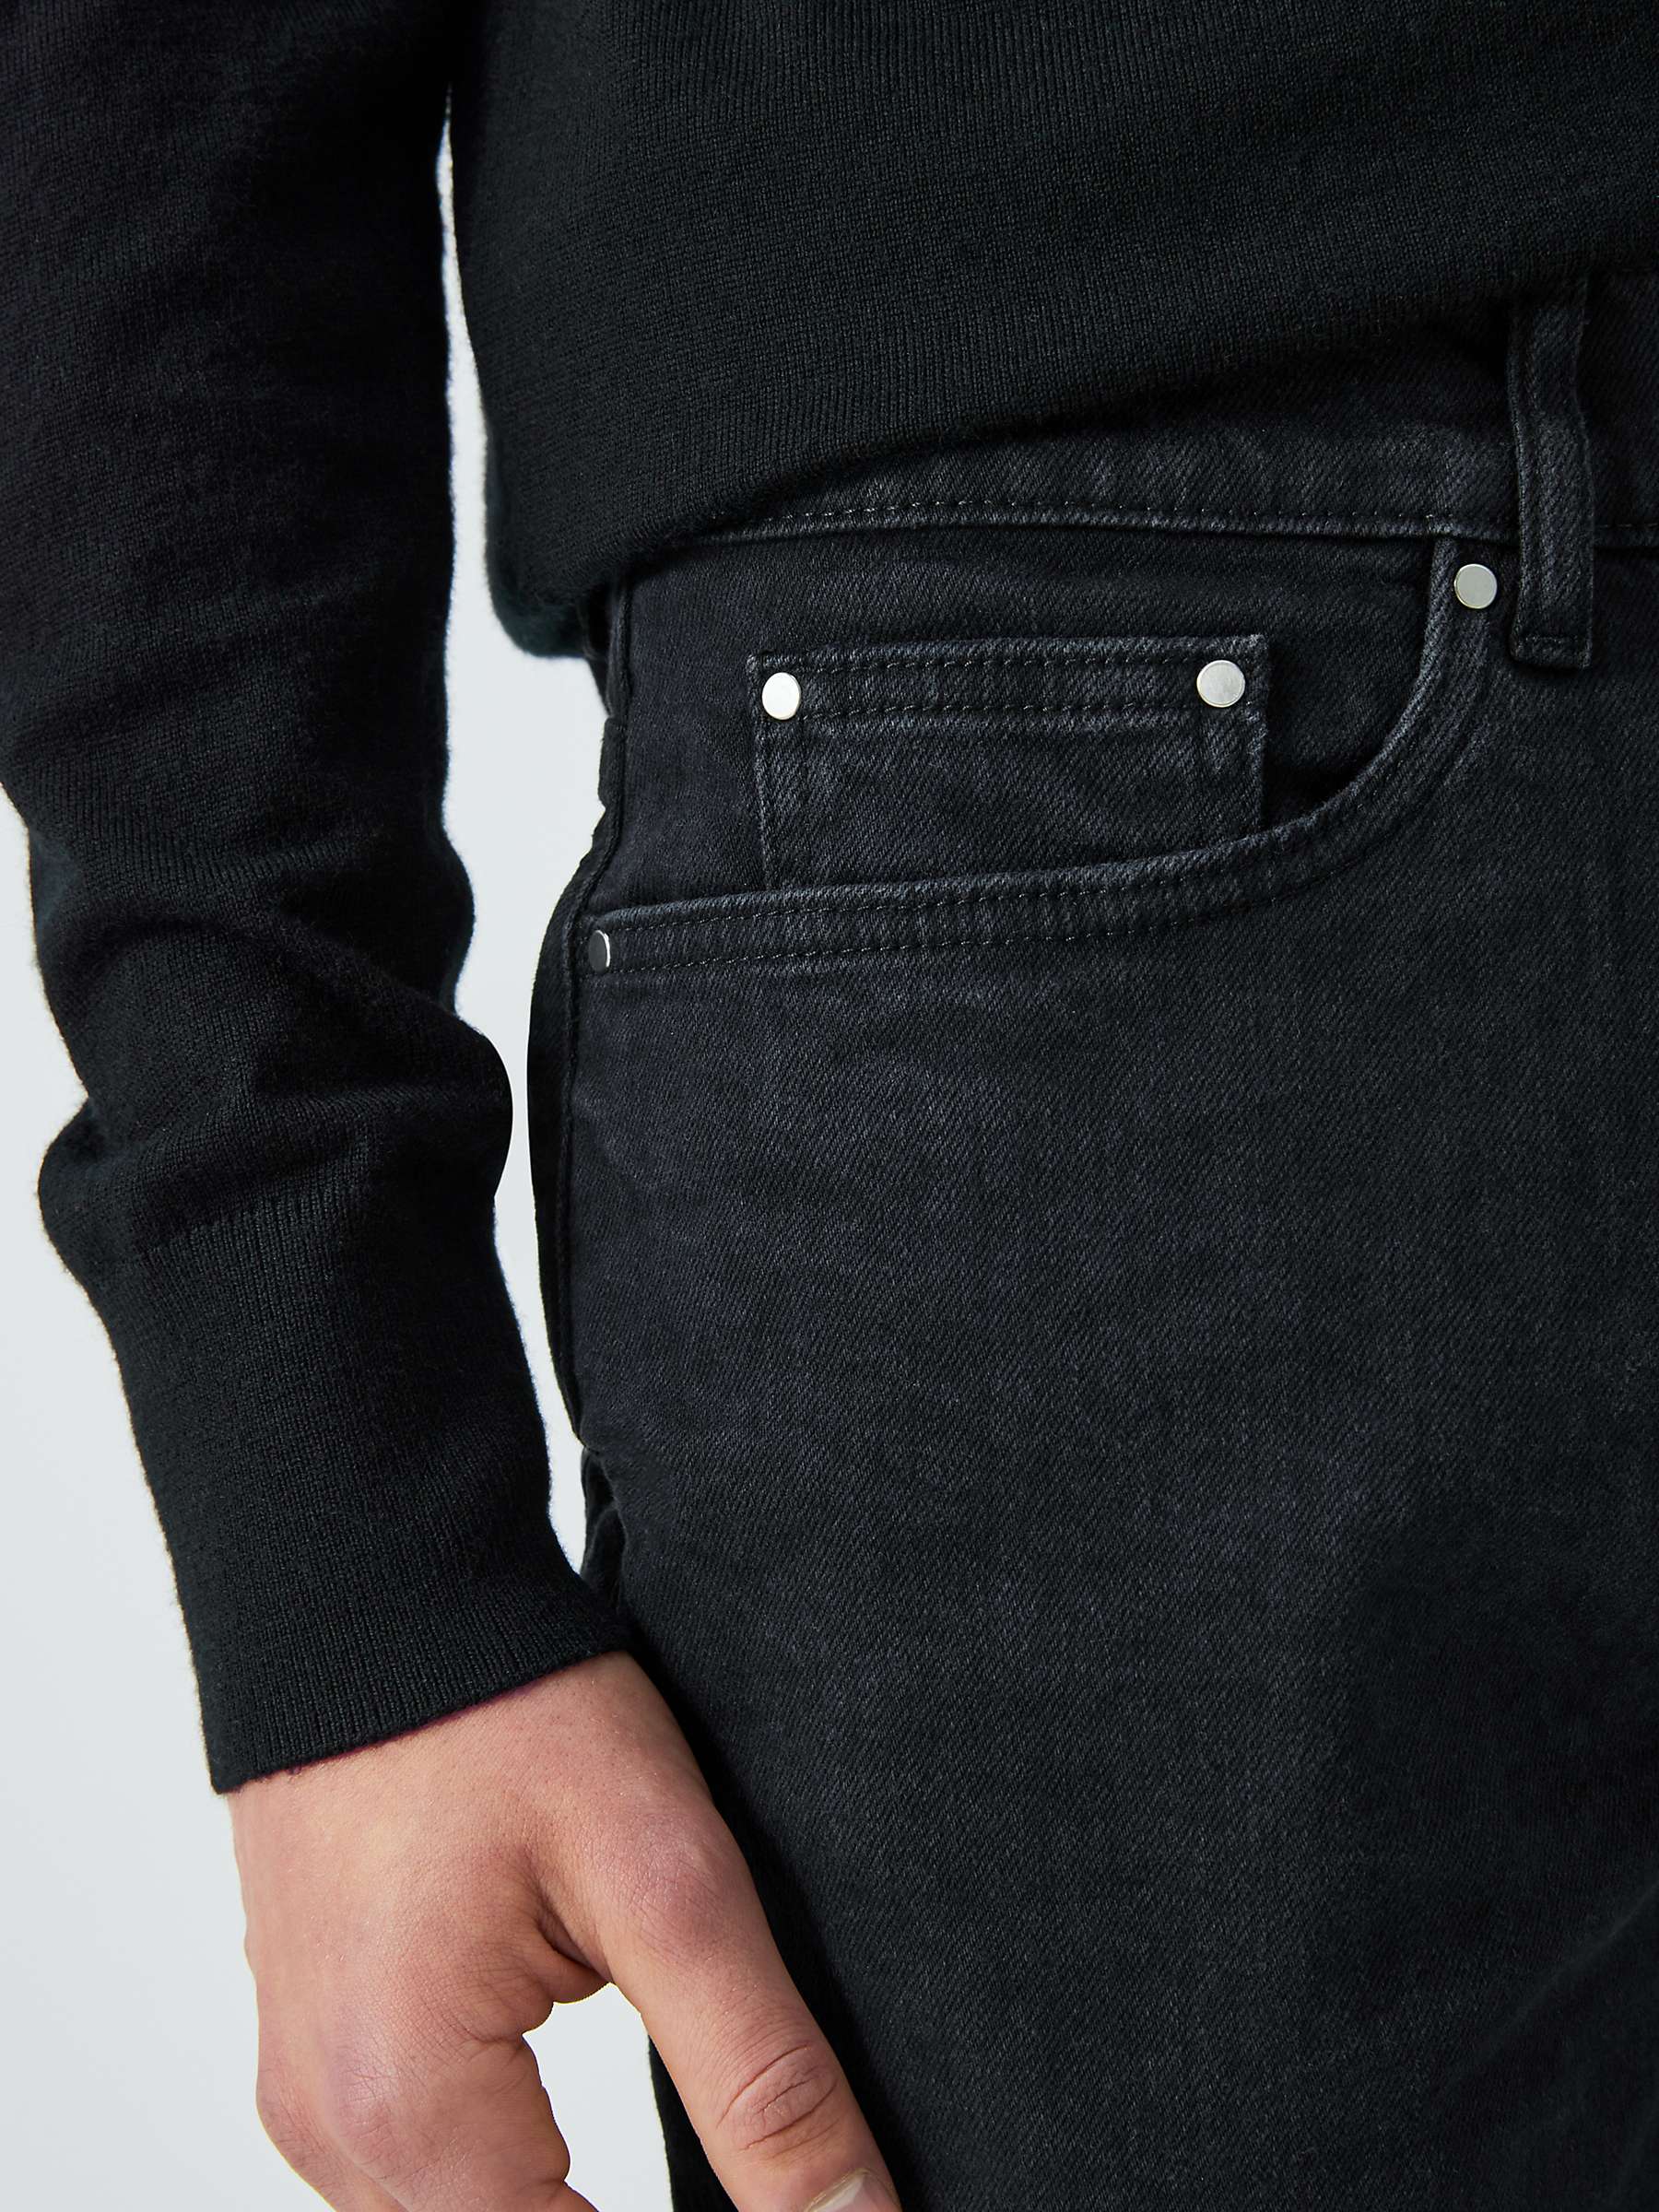 Buy Kin Slim Tapered Fit Denim Jeans, Black Online at johnlewis.com